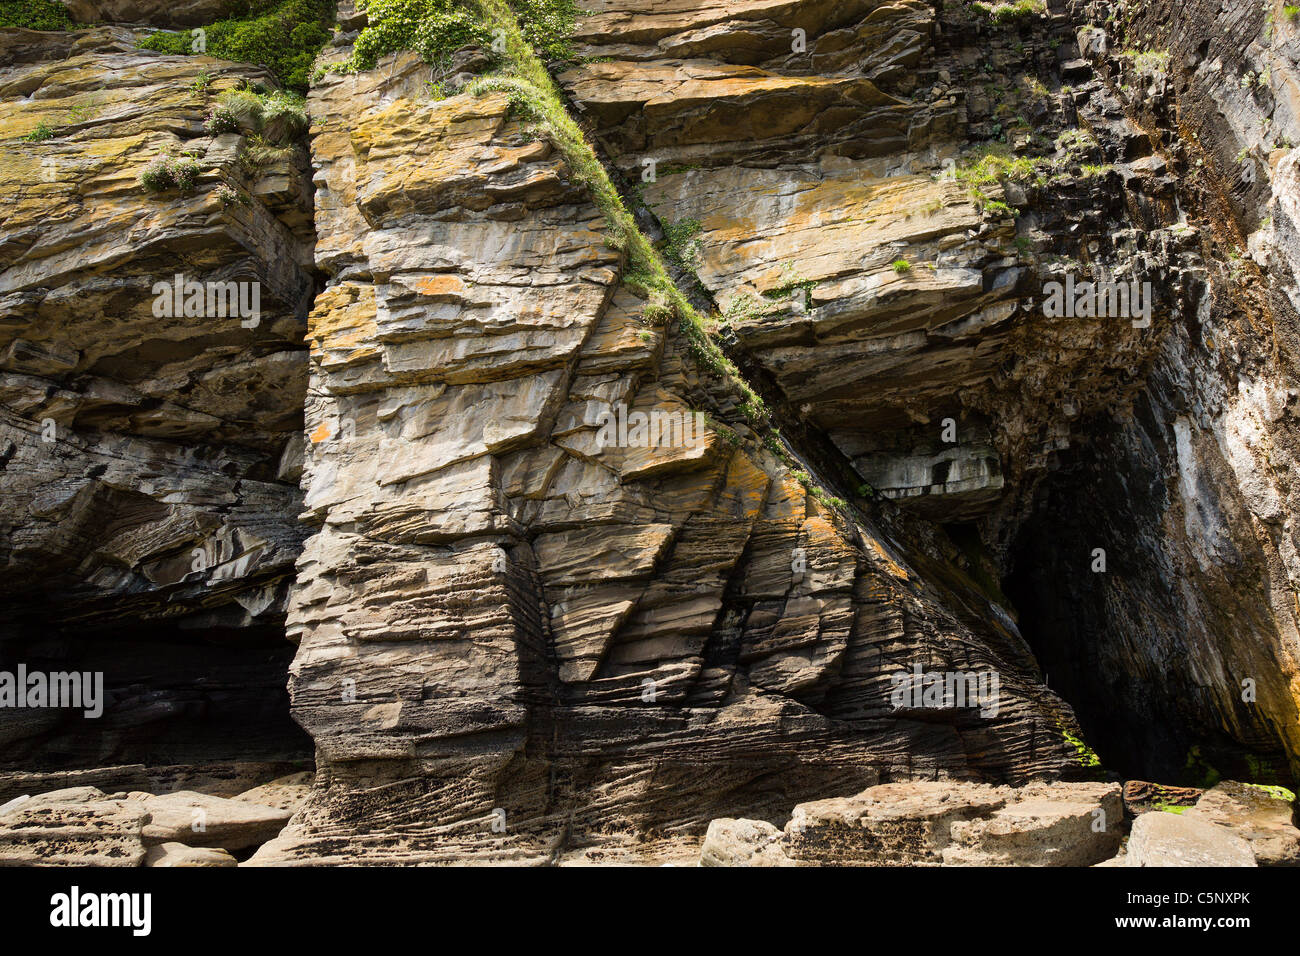 Falaise près de la mer Glasnakille sur l'île de Skye, en Écosse, montrant des lignes de faille et intrusions ignées érodées dans la roche sédimentaire. Banque D'Images